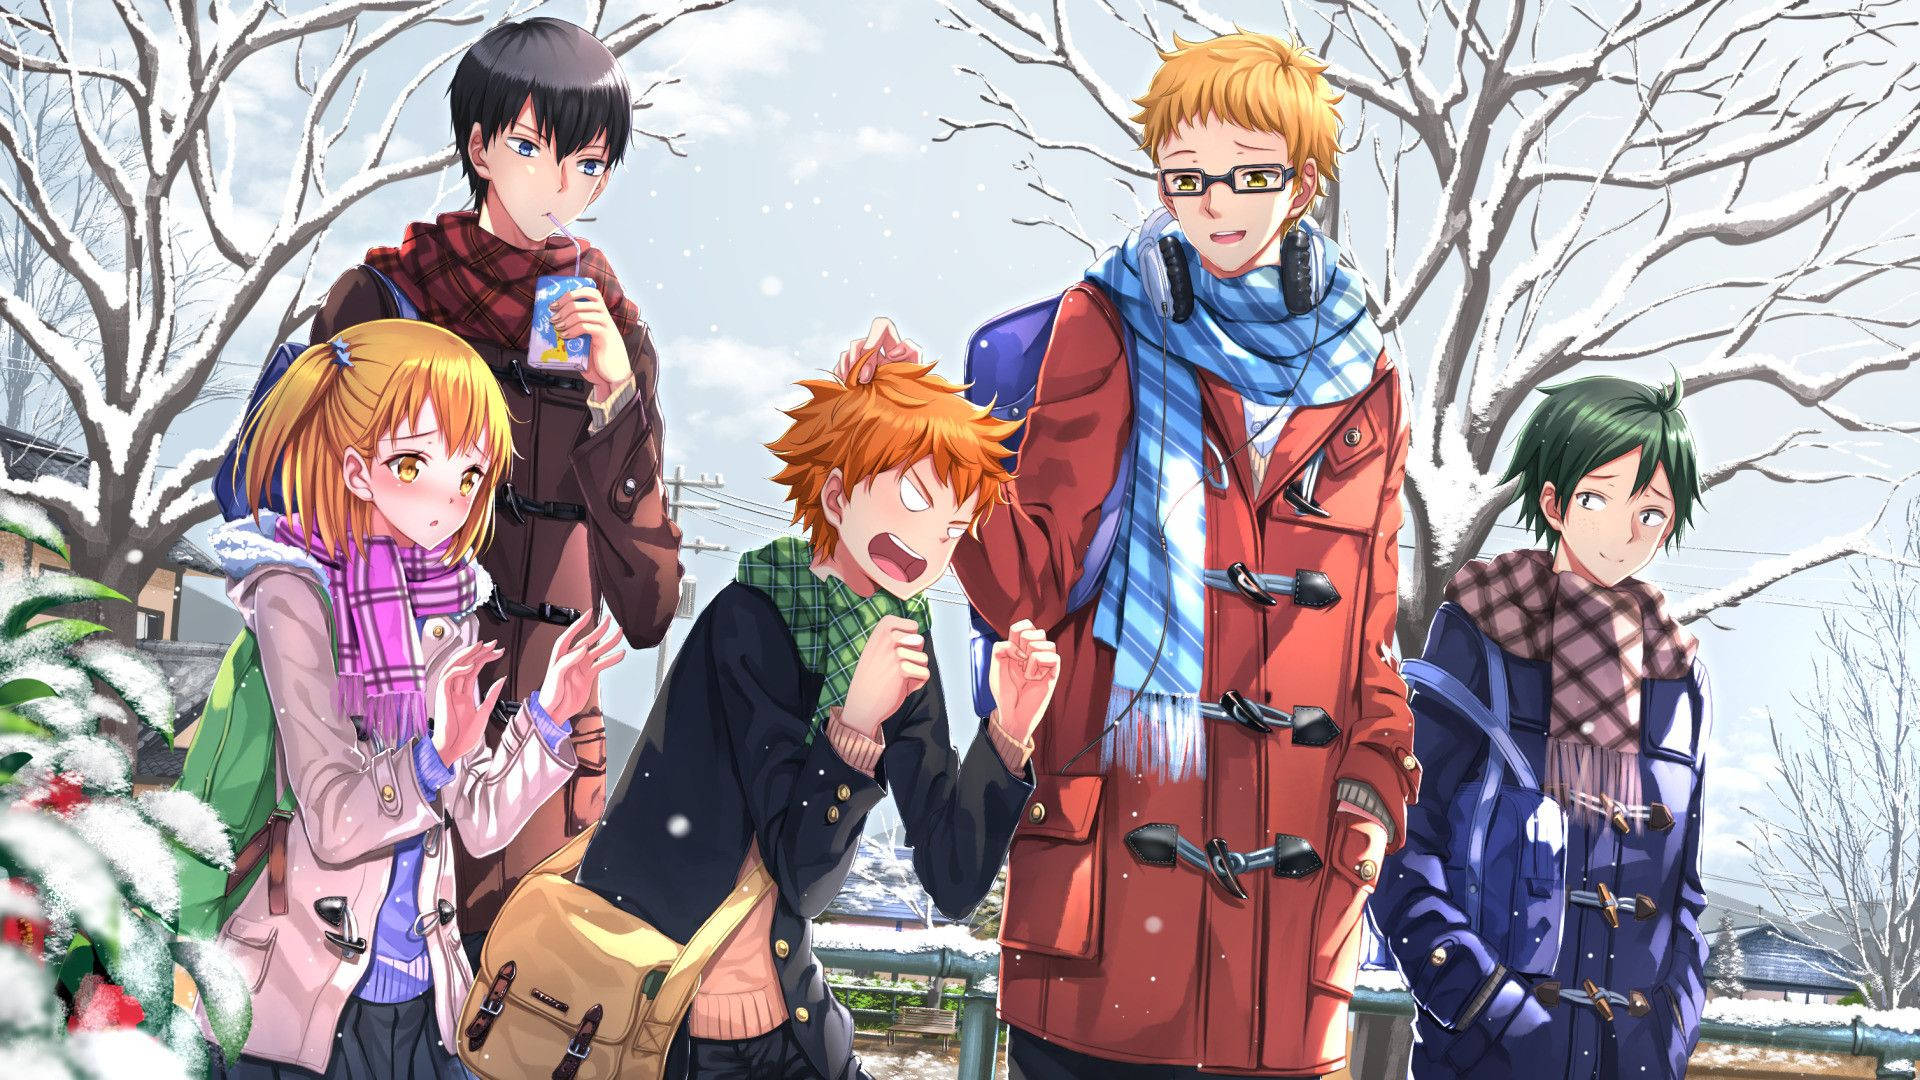 Kei Tsukishima And Friends Winter Day Wallpaper